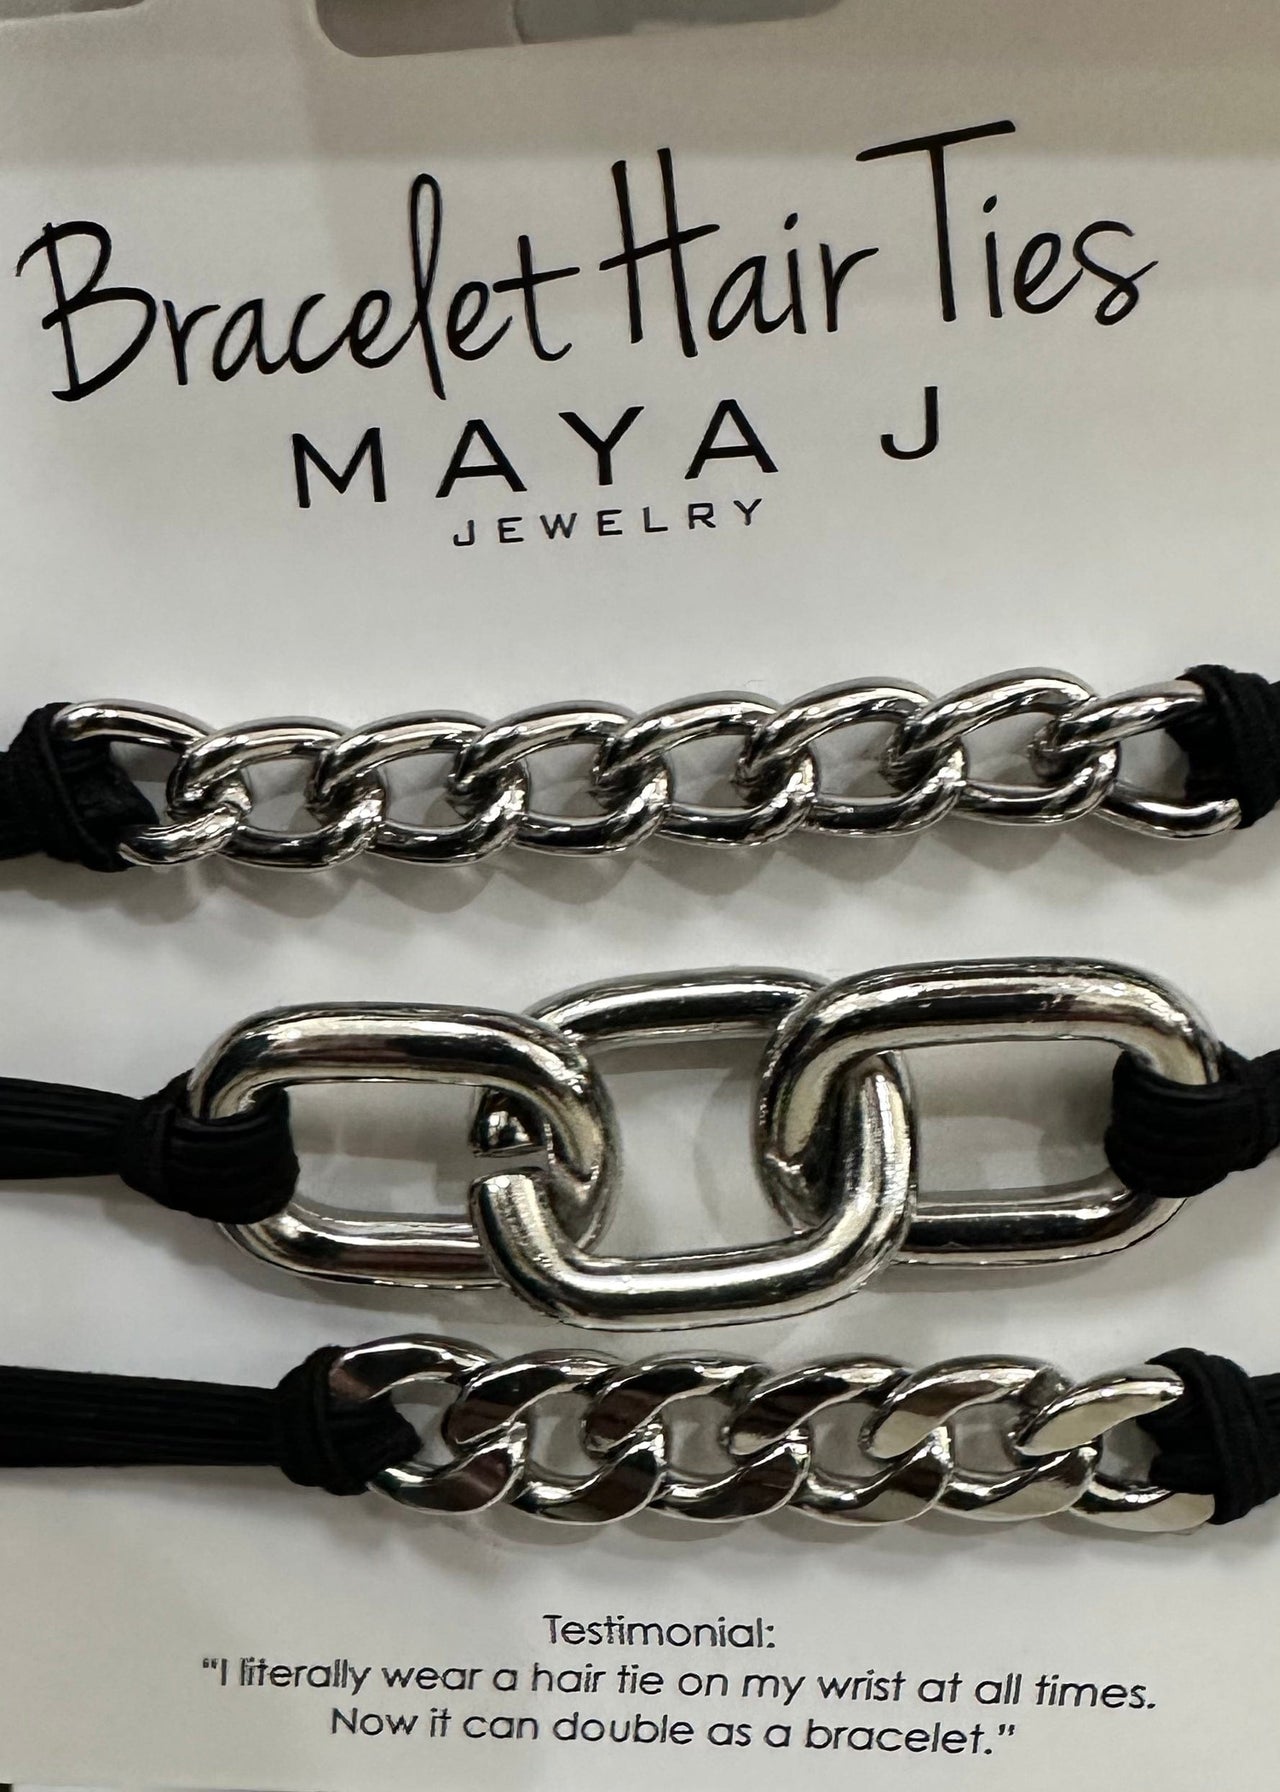 Black Bracelet Hair Ties Maya J Hair Tie